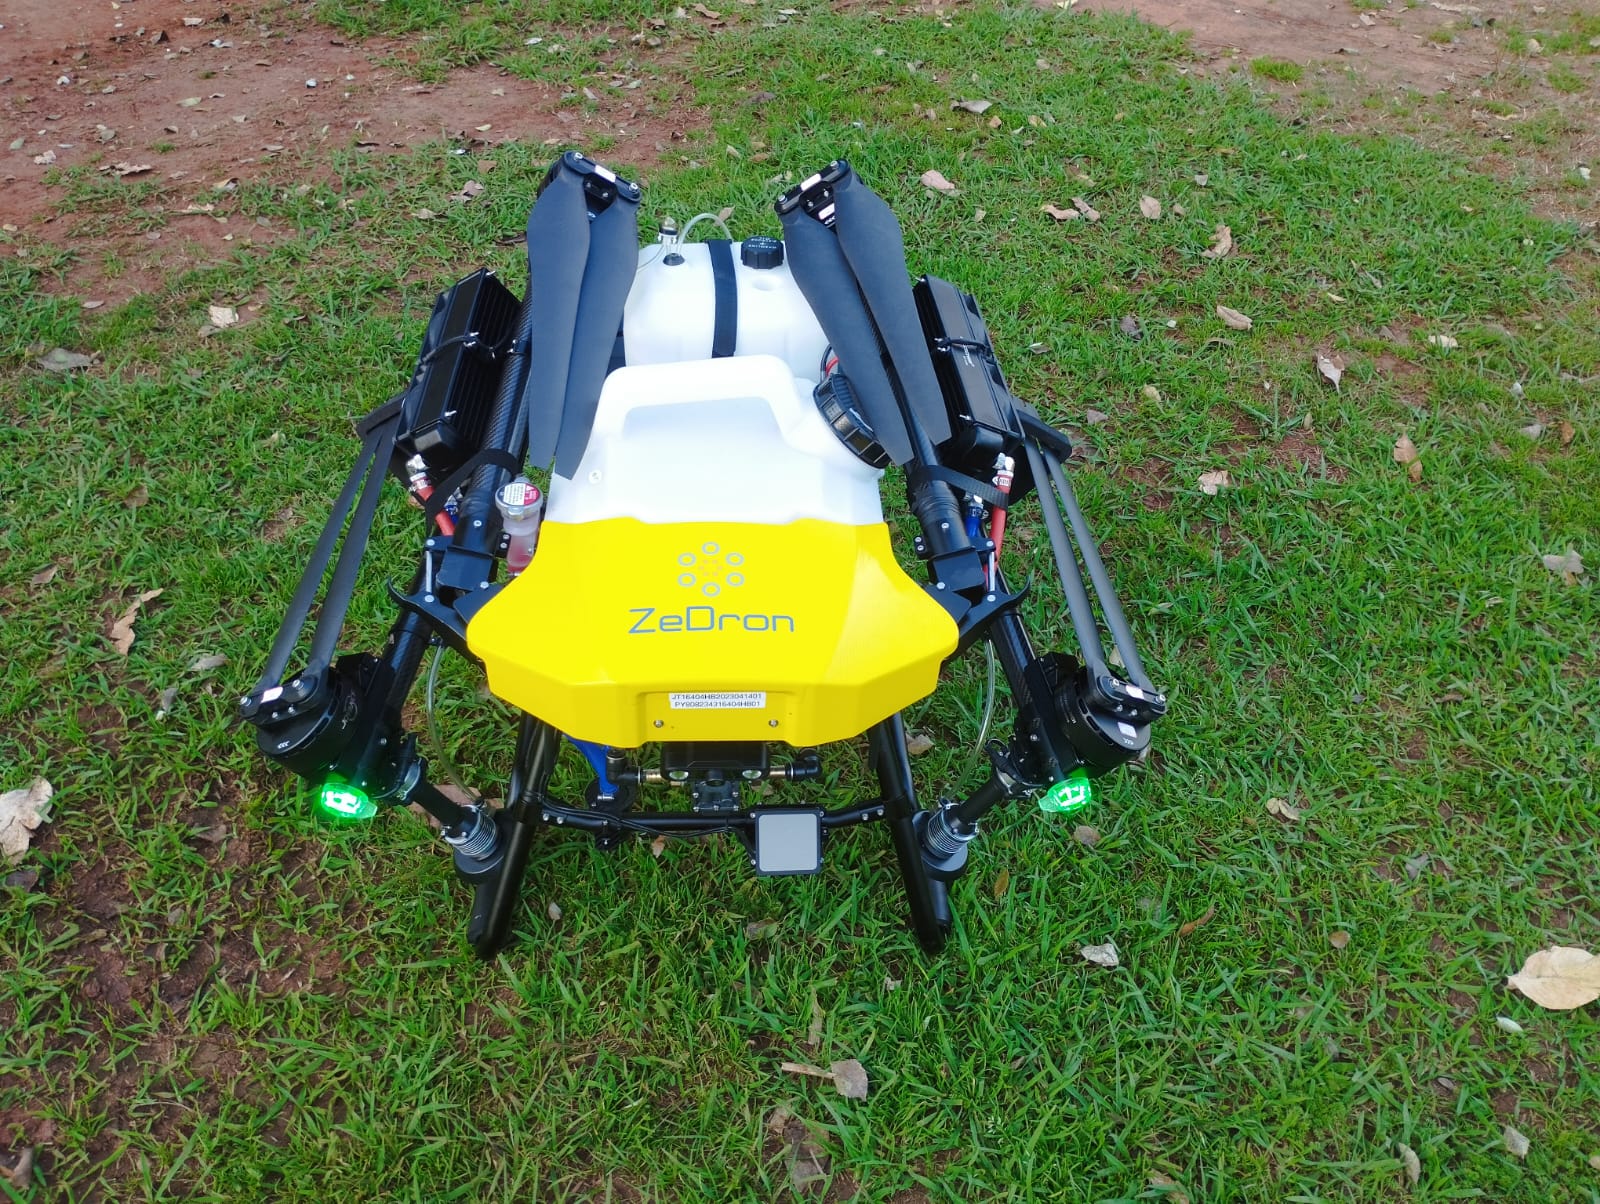 hybrid drone sprayer